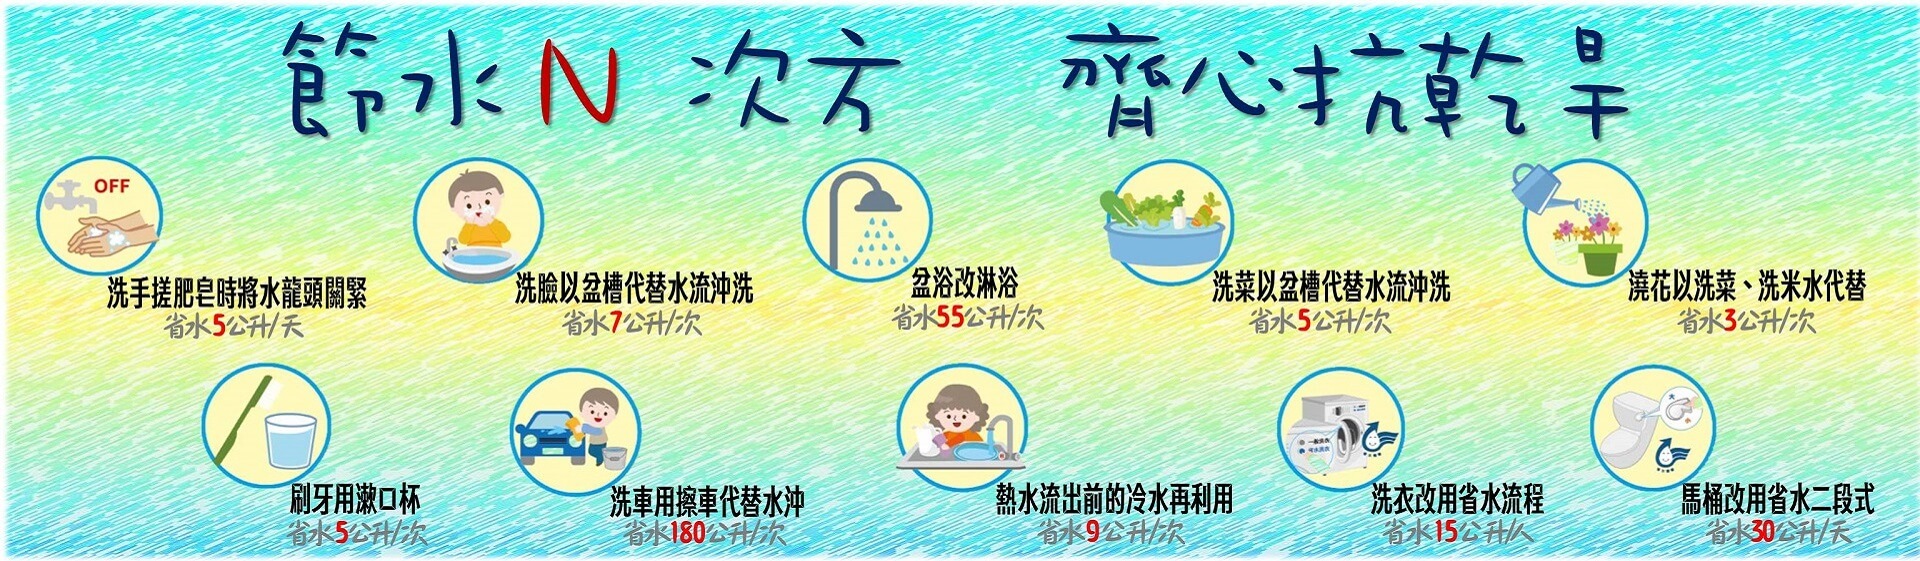 台灣自來水公司節水N次方齊心抗乾旱